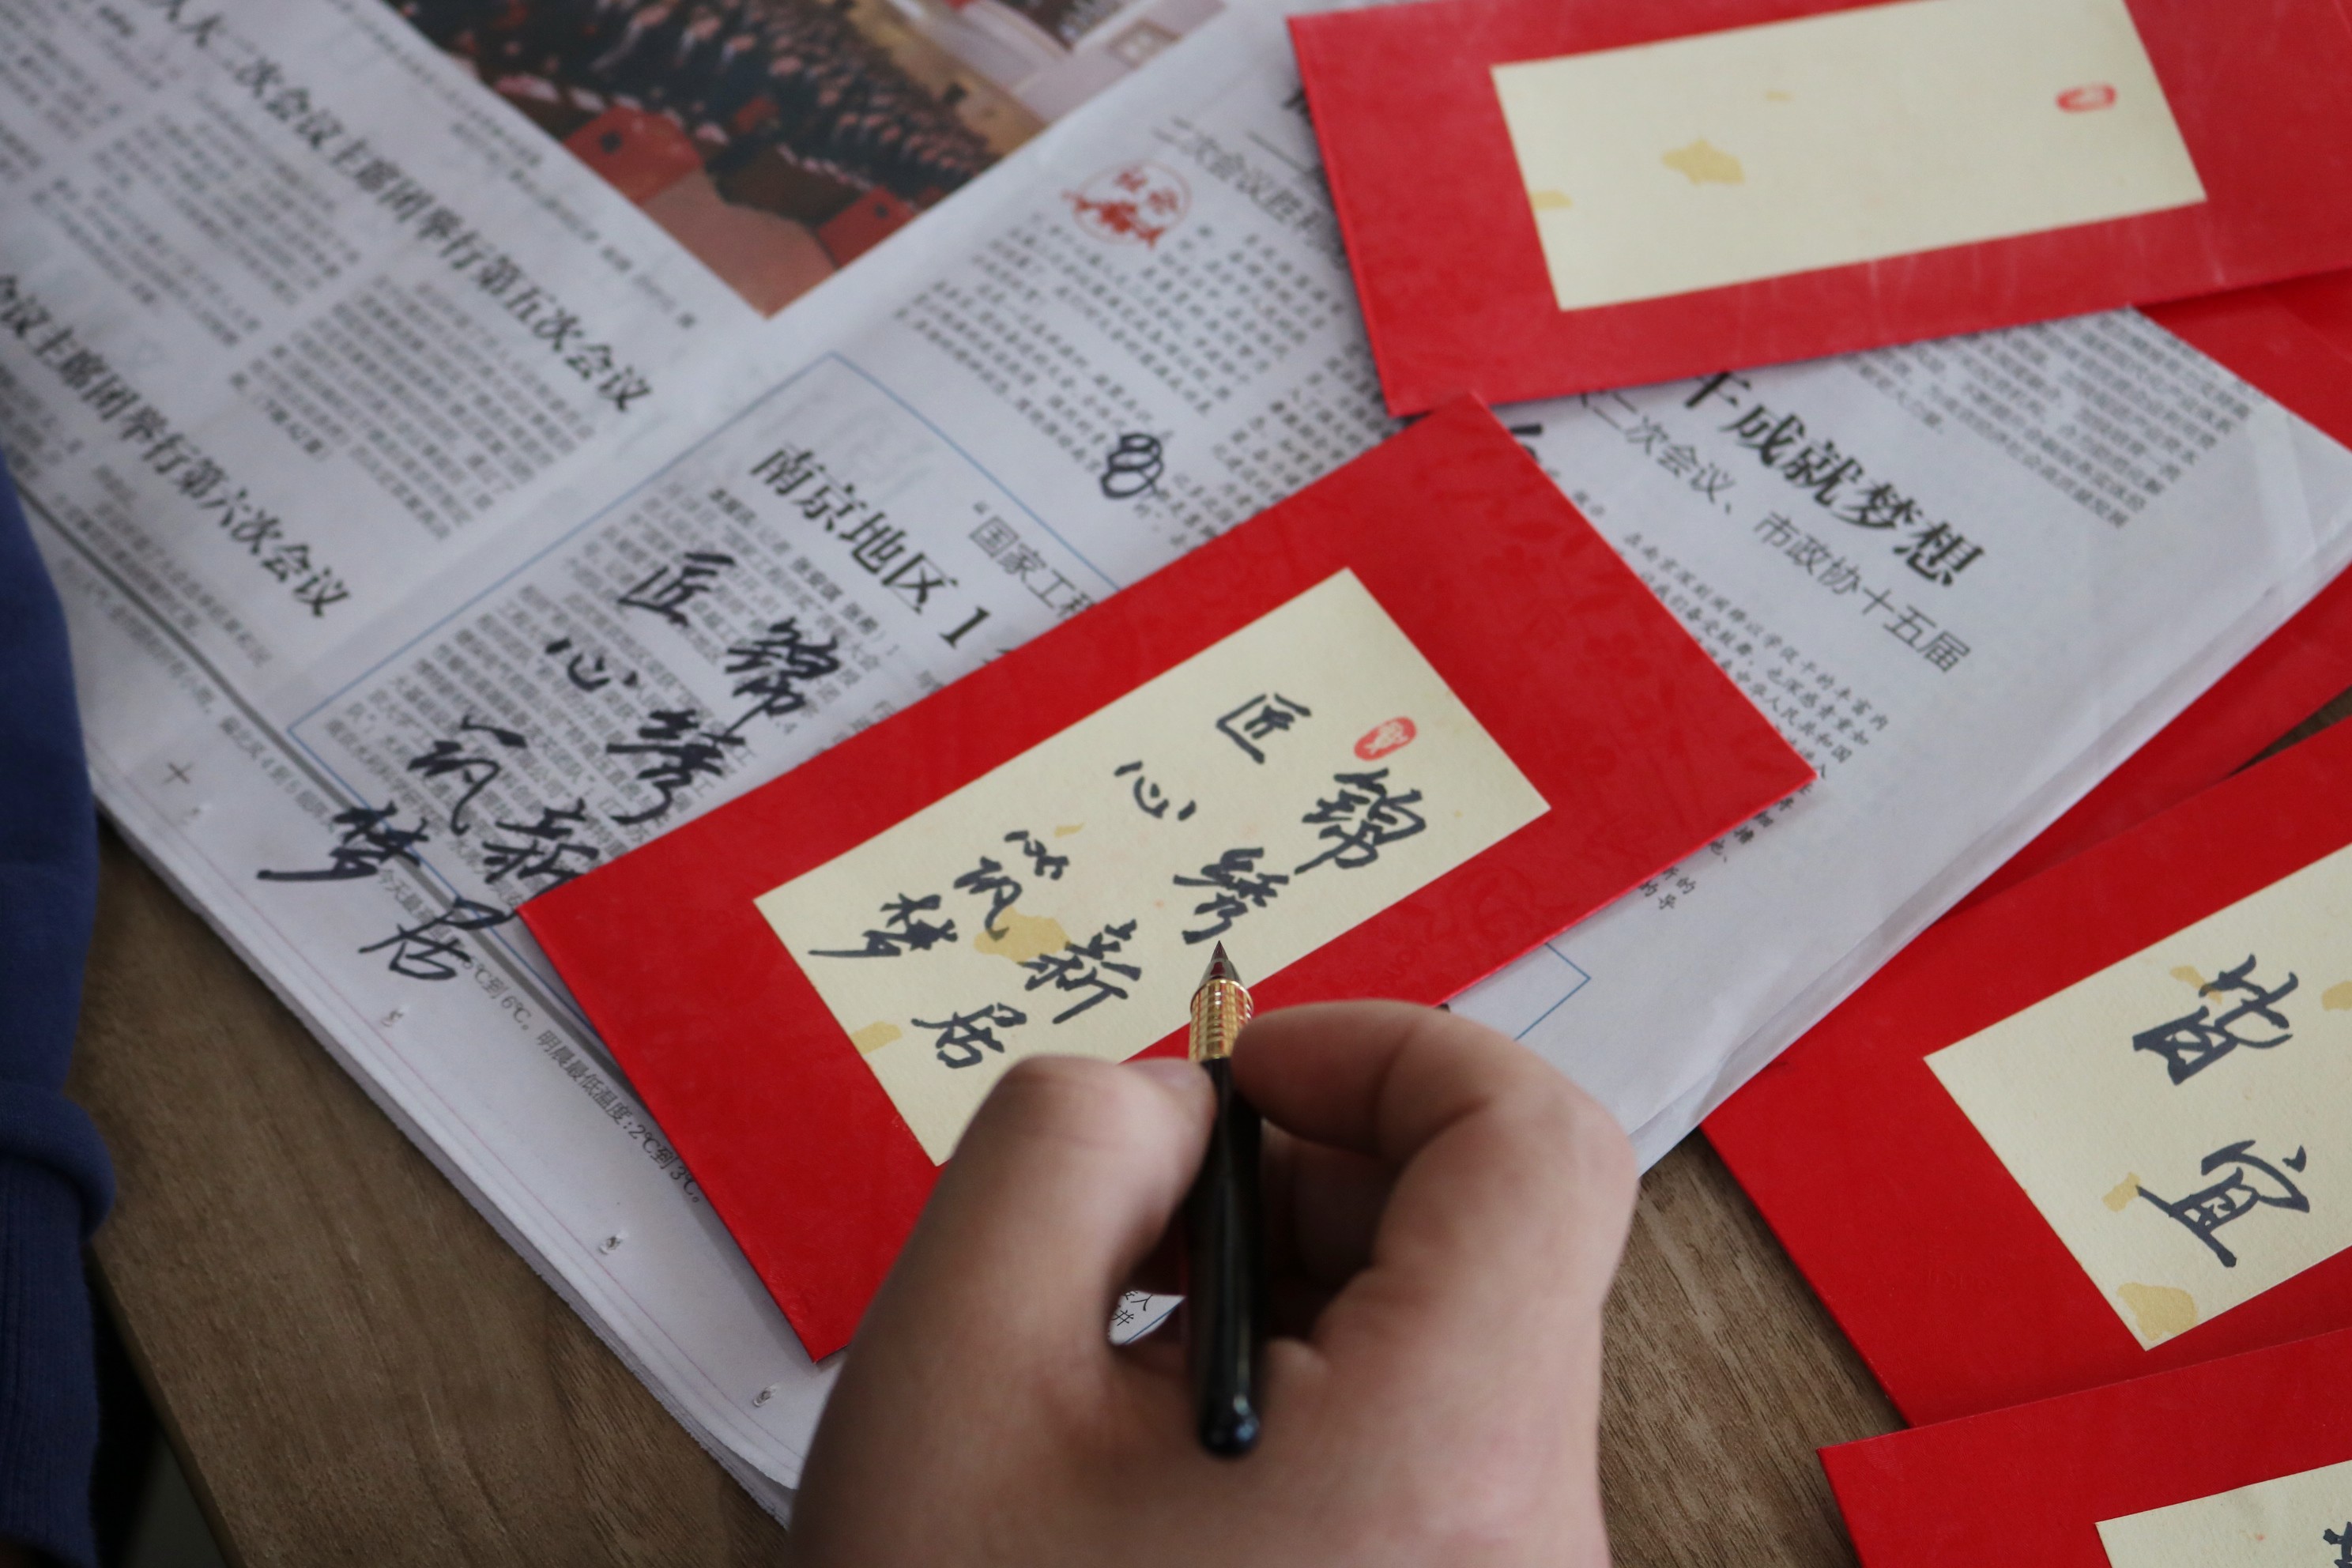 龙行龘龘谱新章 新居集团工会开展祝语迎新春书写活动